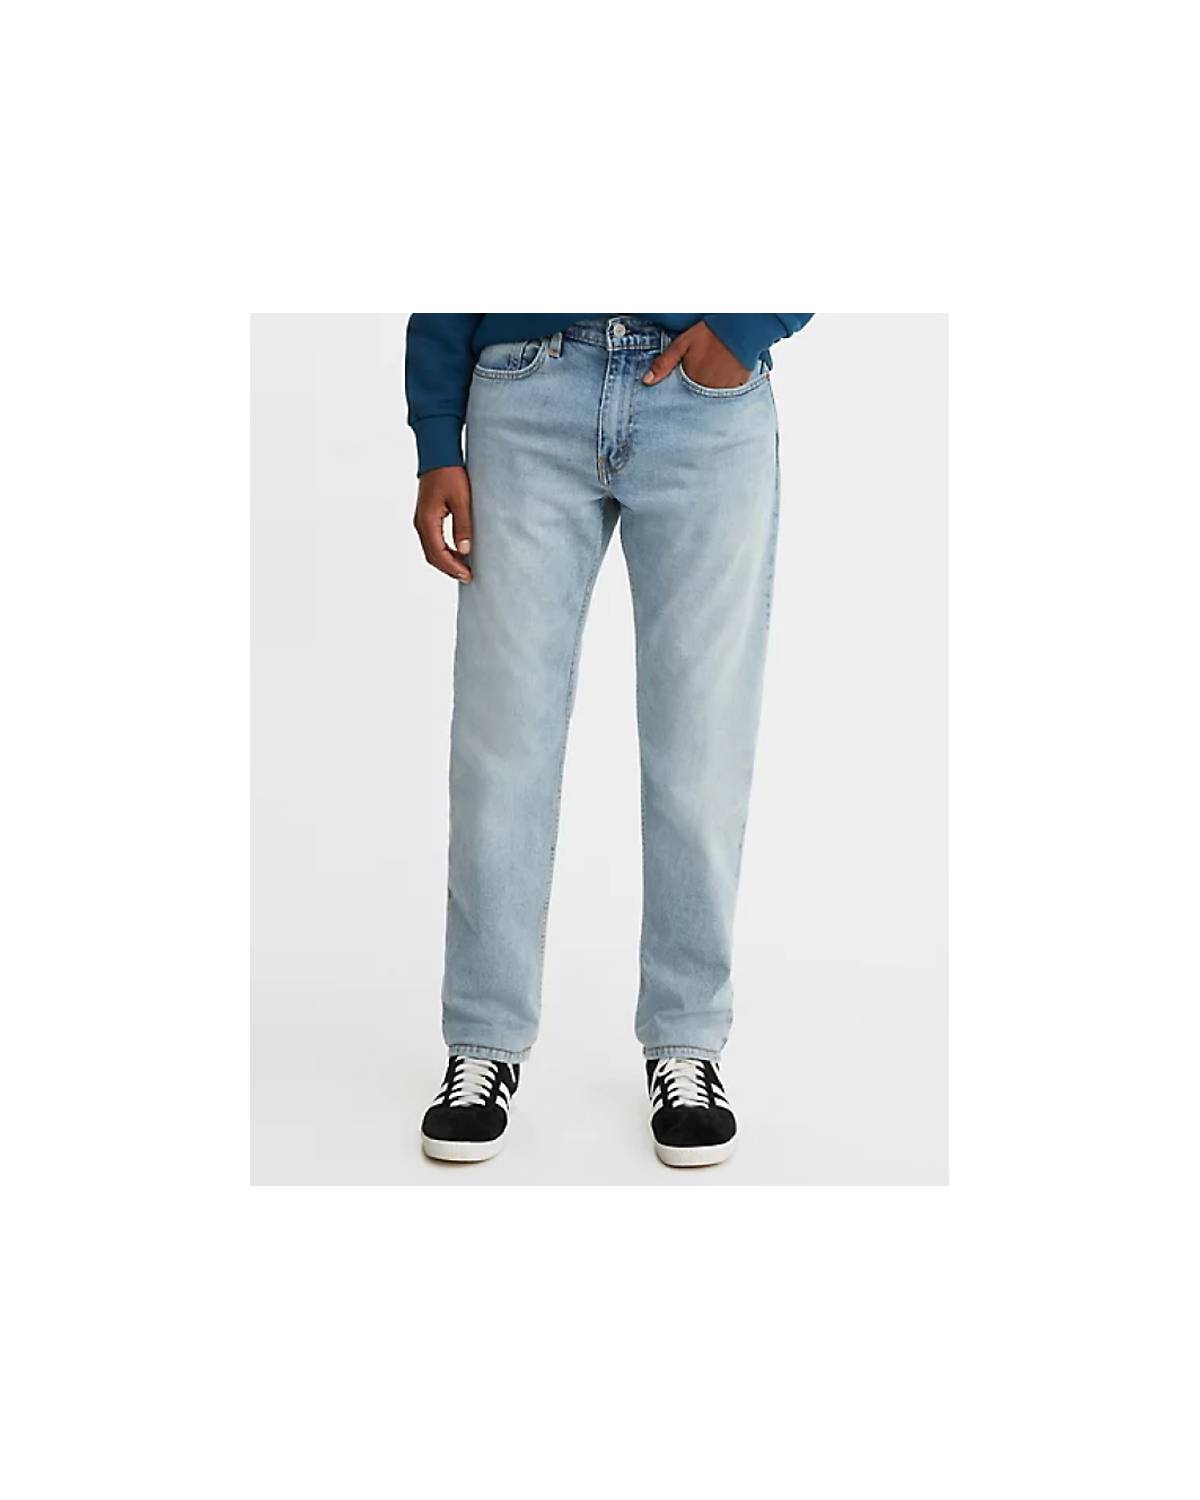 Jeans hommes - Magasinez jeans pour homme